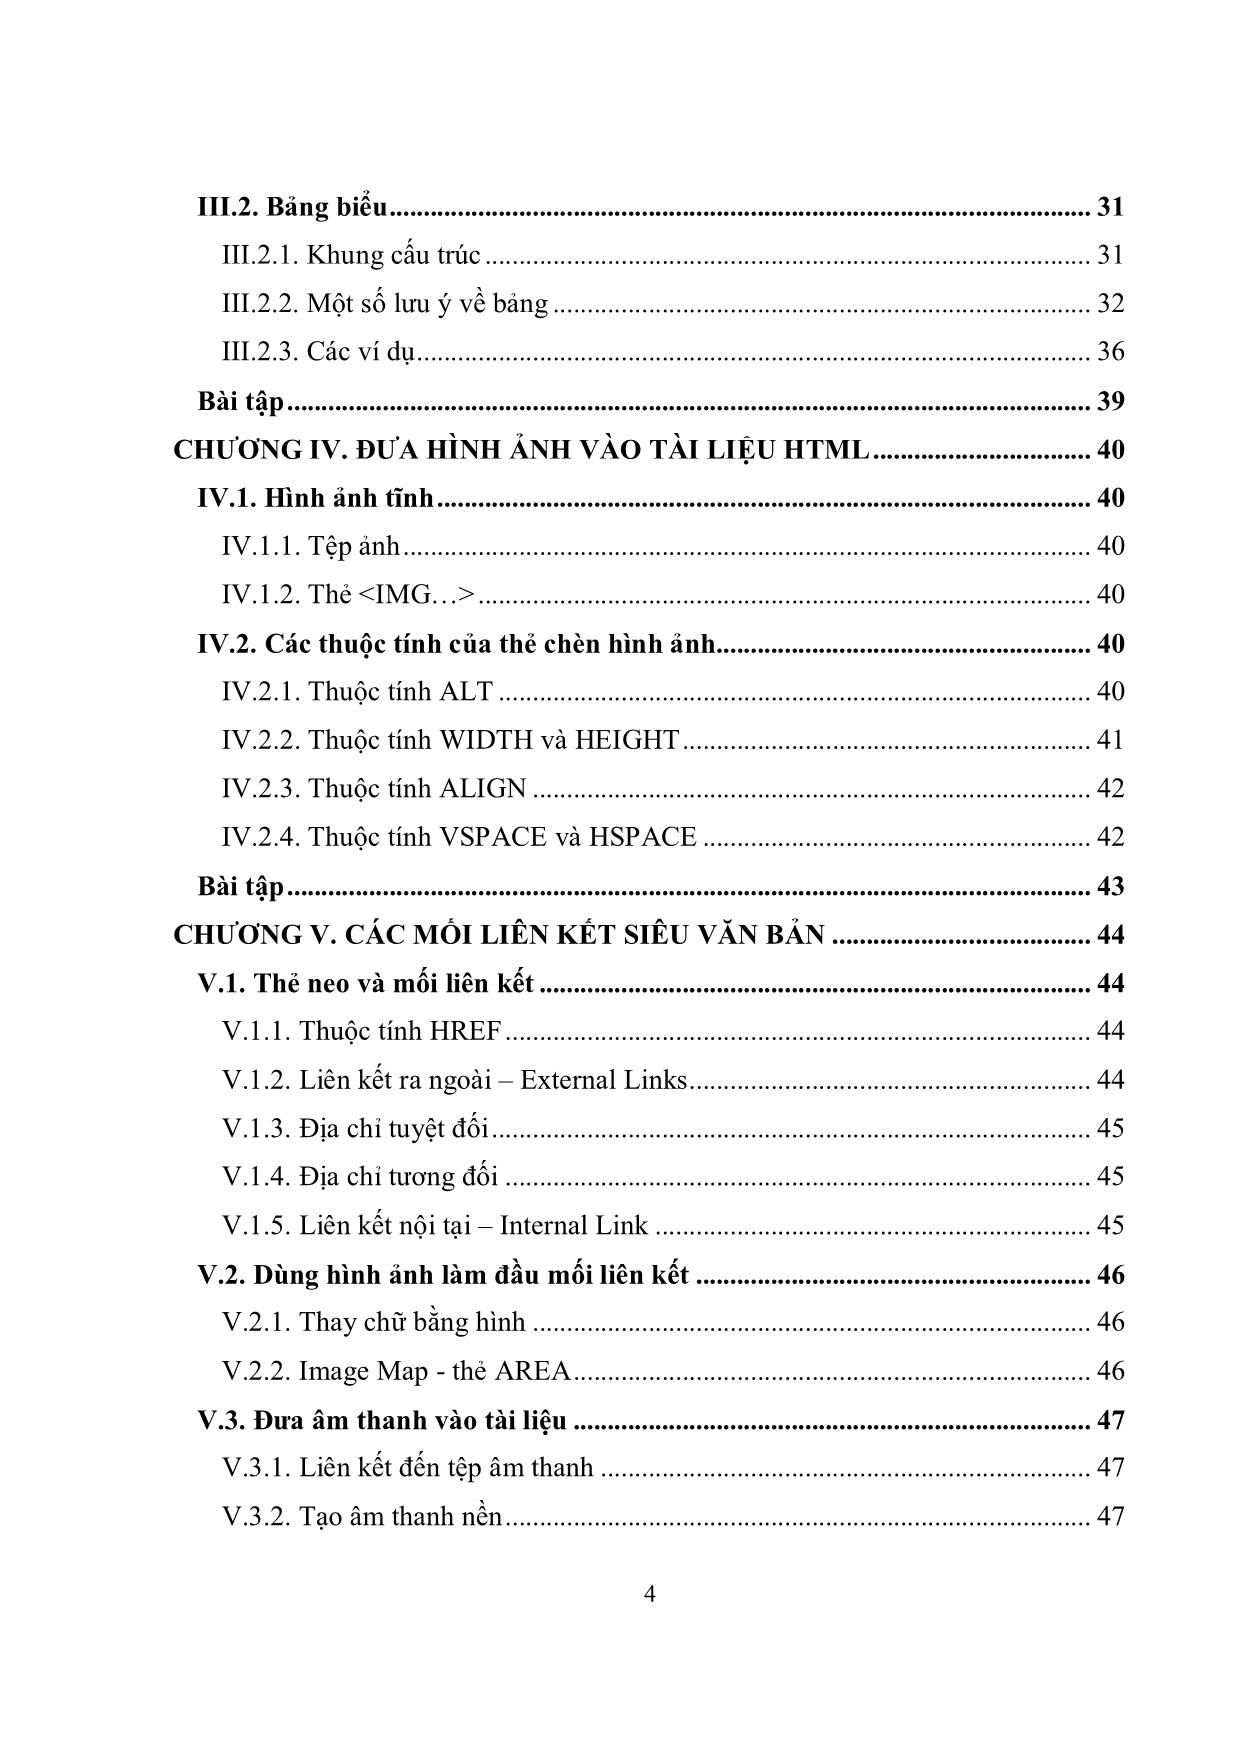 Giáo trình Ngôn ngữ siêu văn bản HTML (Phần 1) trang 5